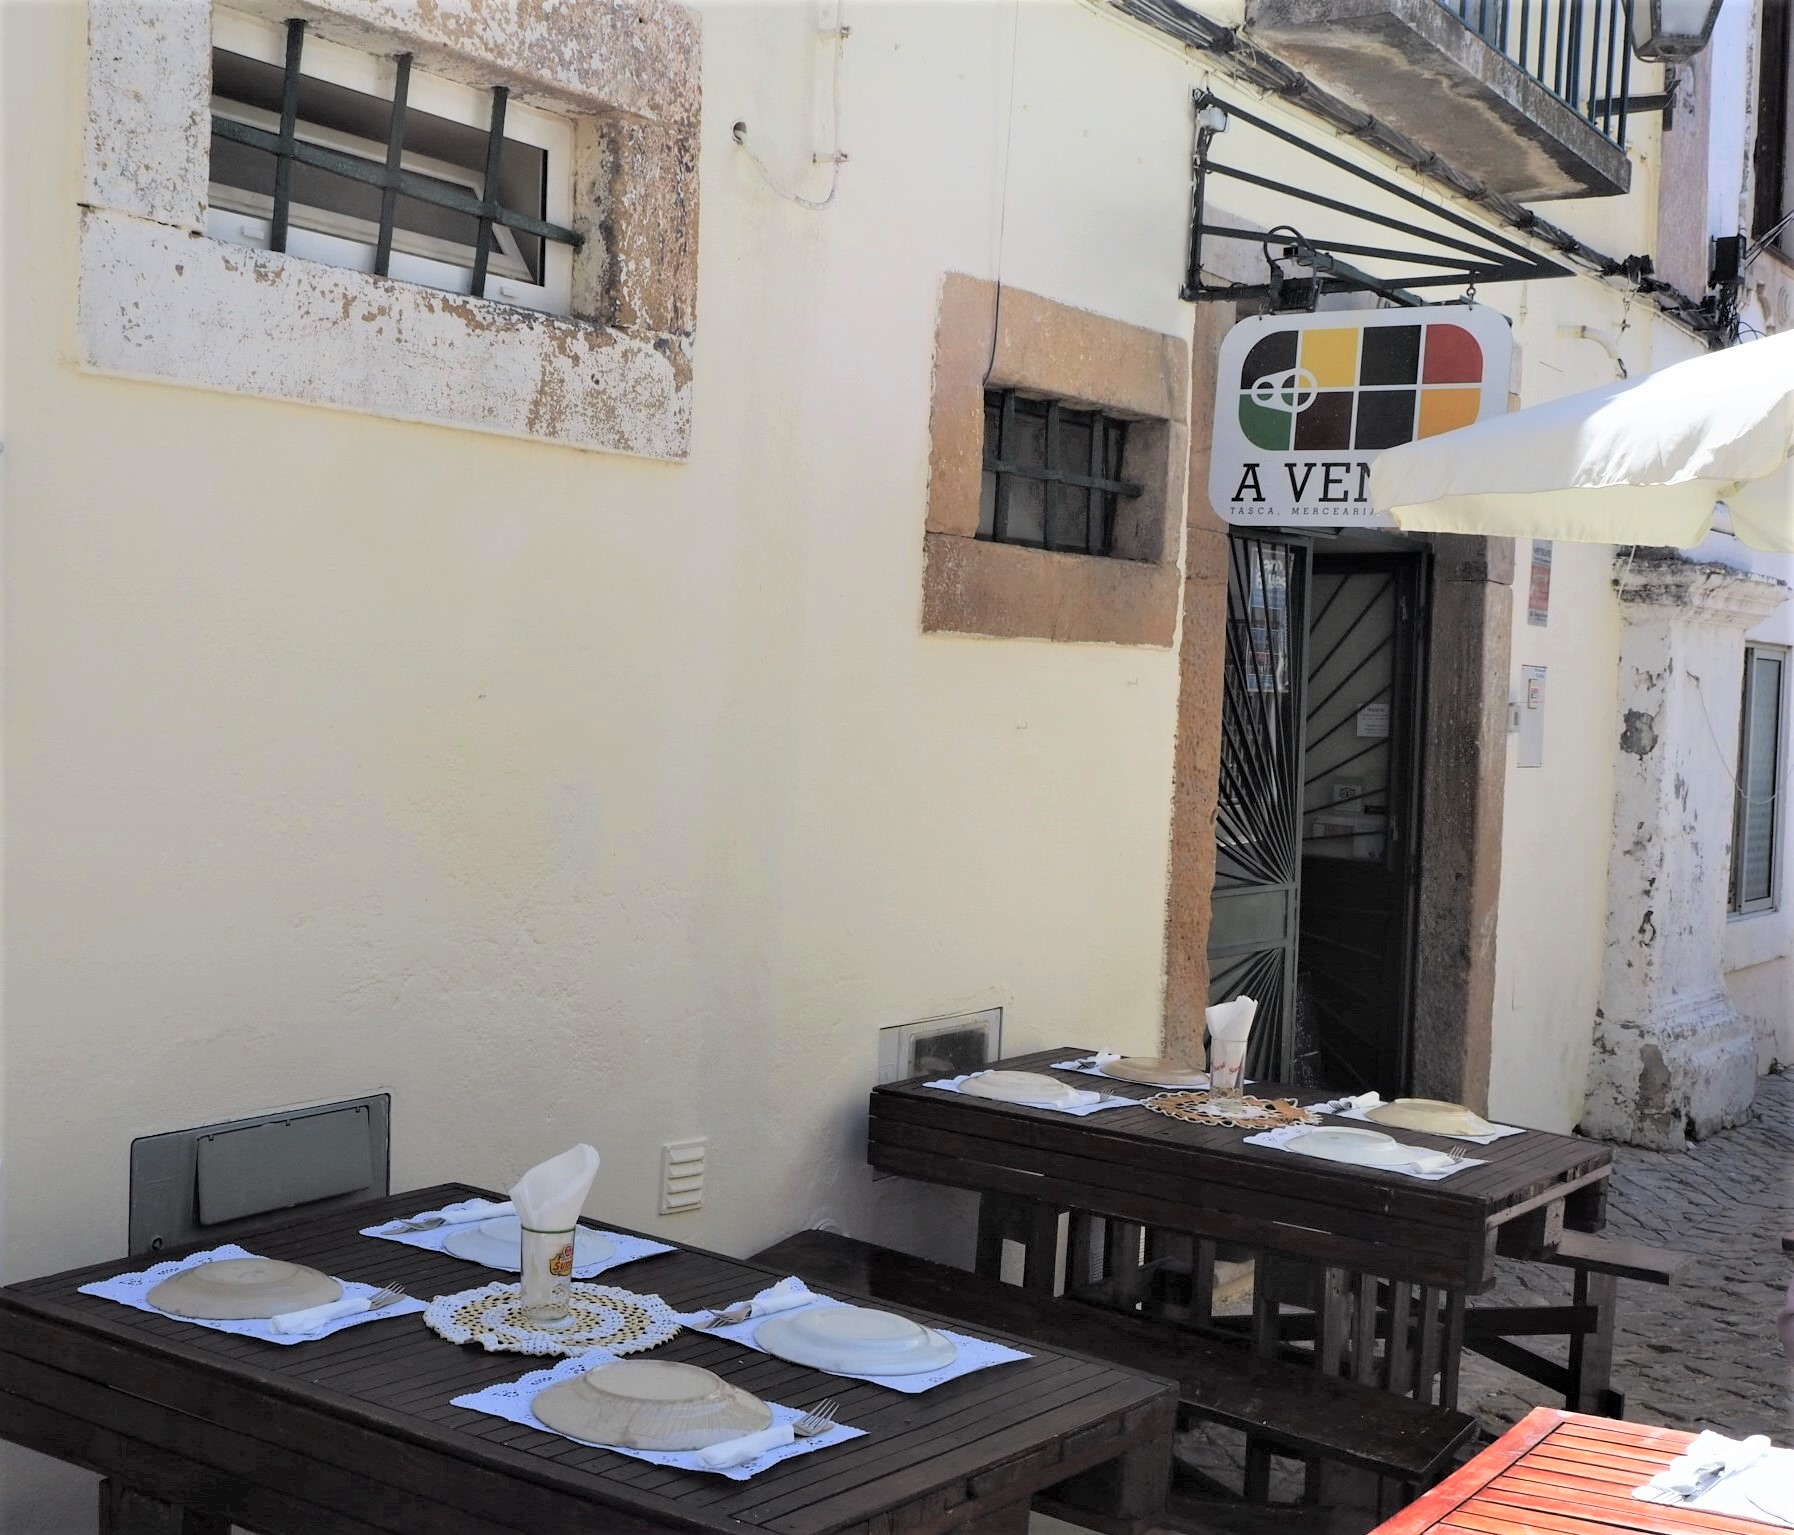 Restaurante A Venda de Faro